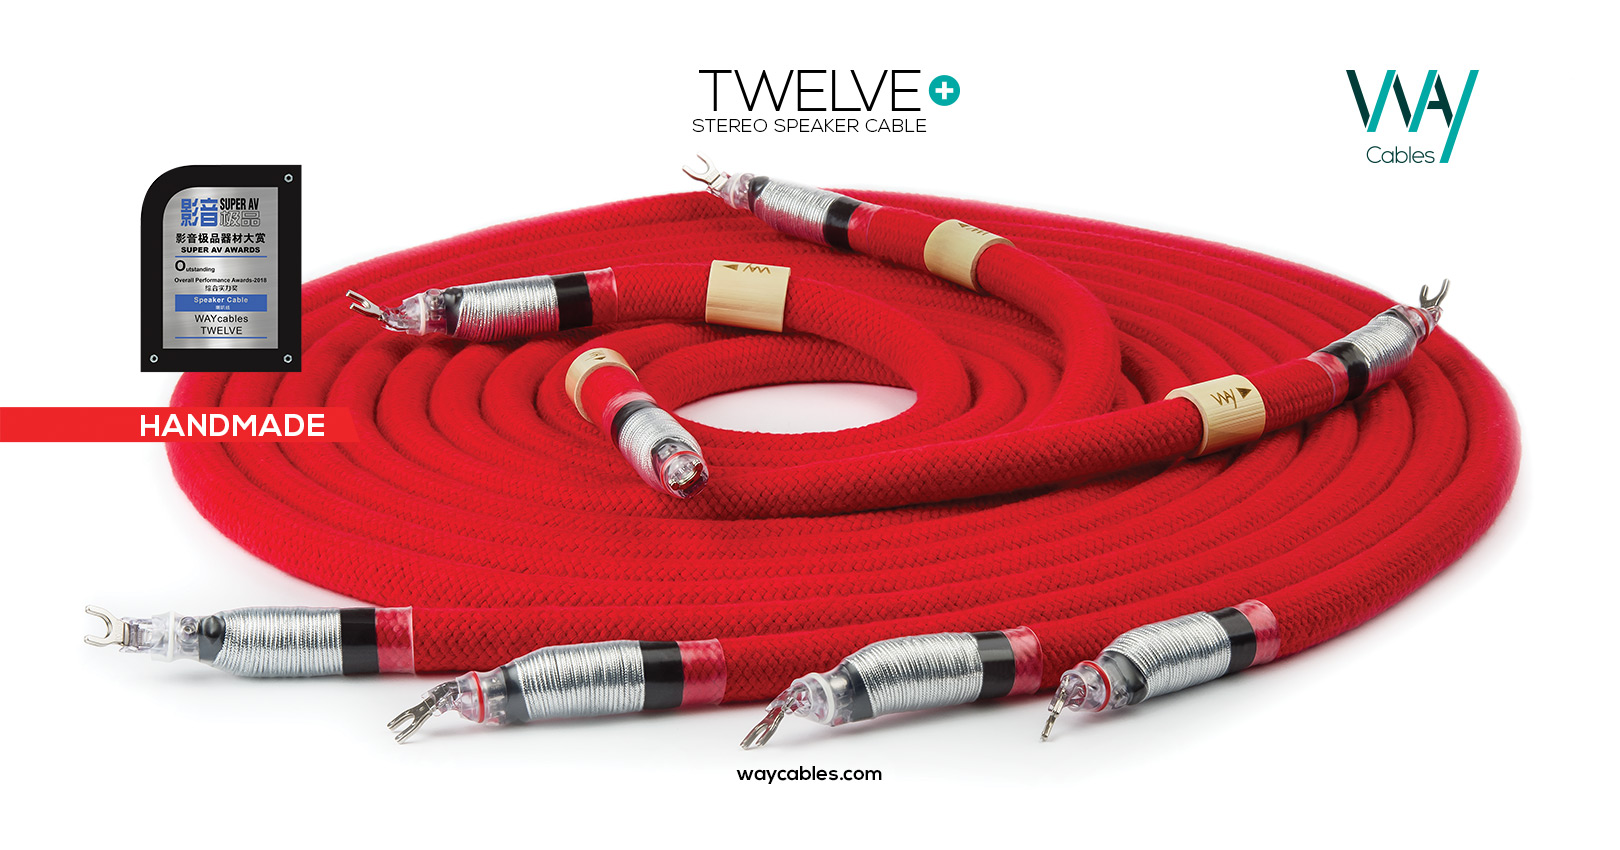 Way Cables LS Twelve+, 2 x 3 m